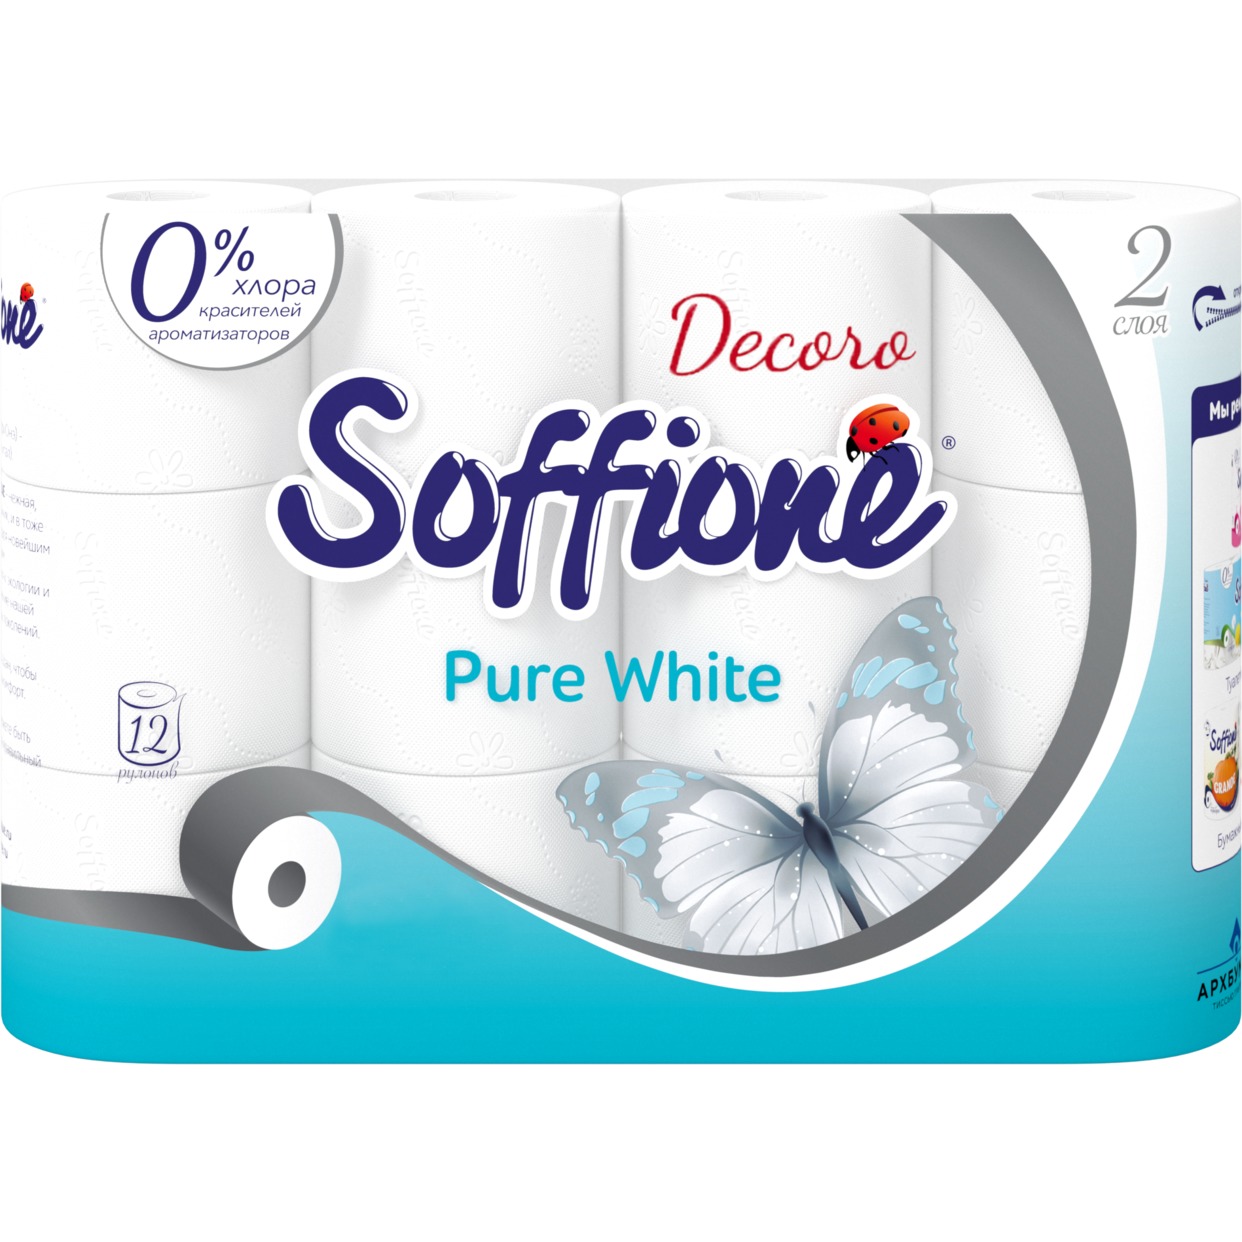 Soffione Бумага туалетная Pure White 2 слоя 12 рулонов по акции в Пятерочке